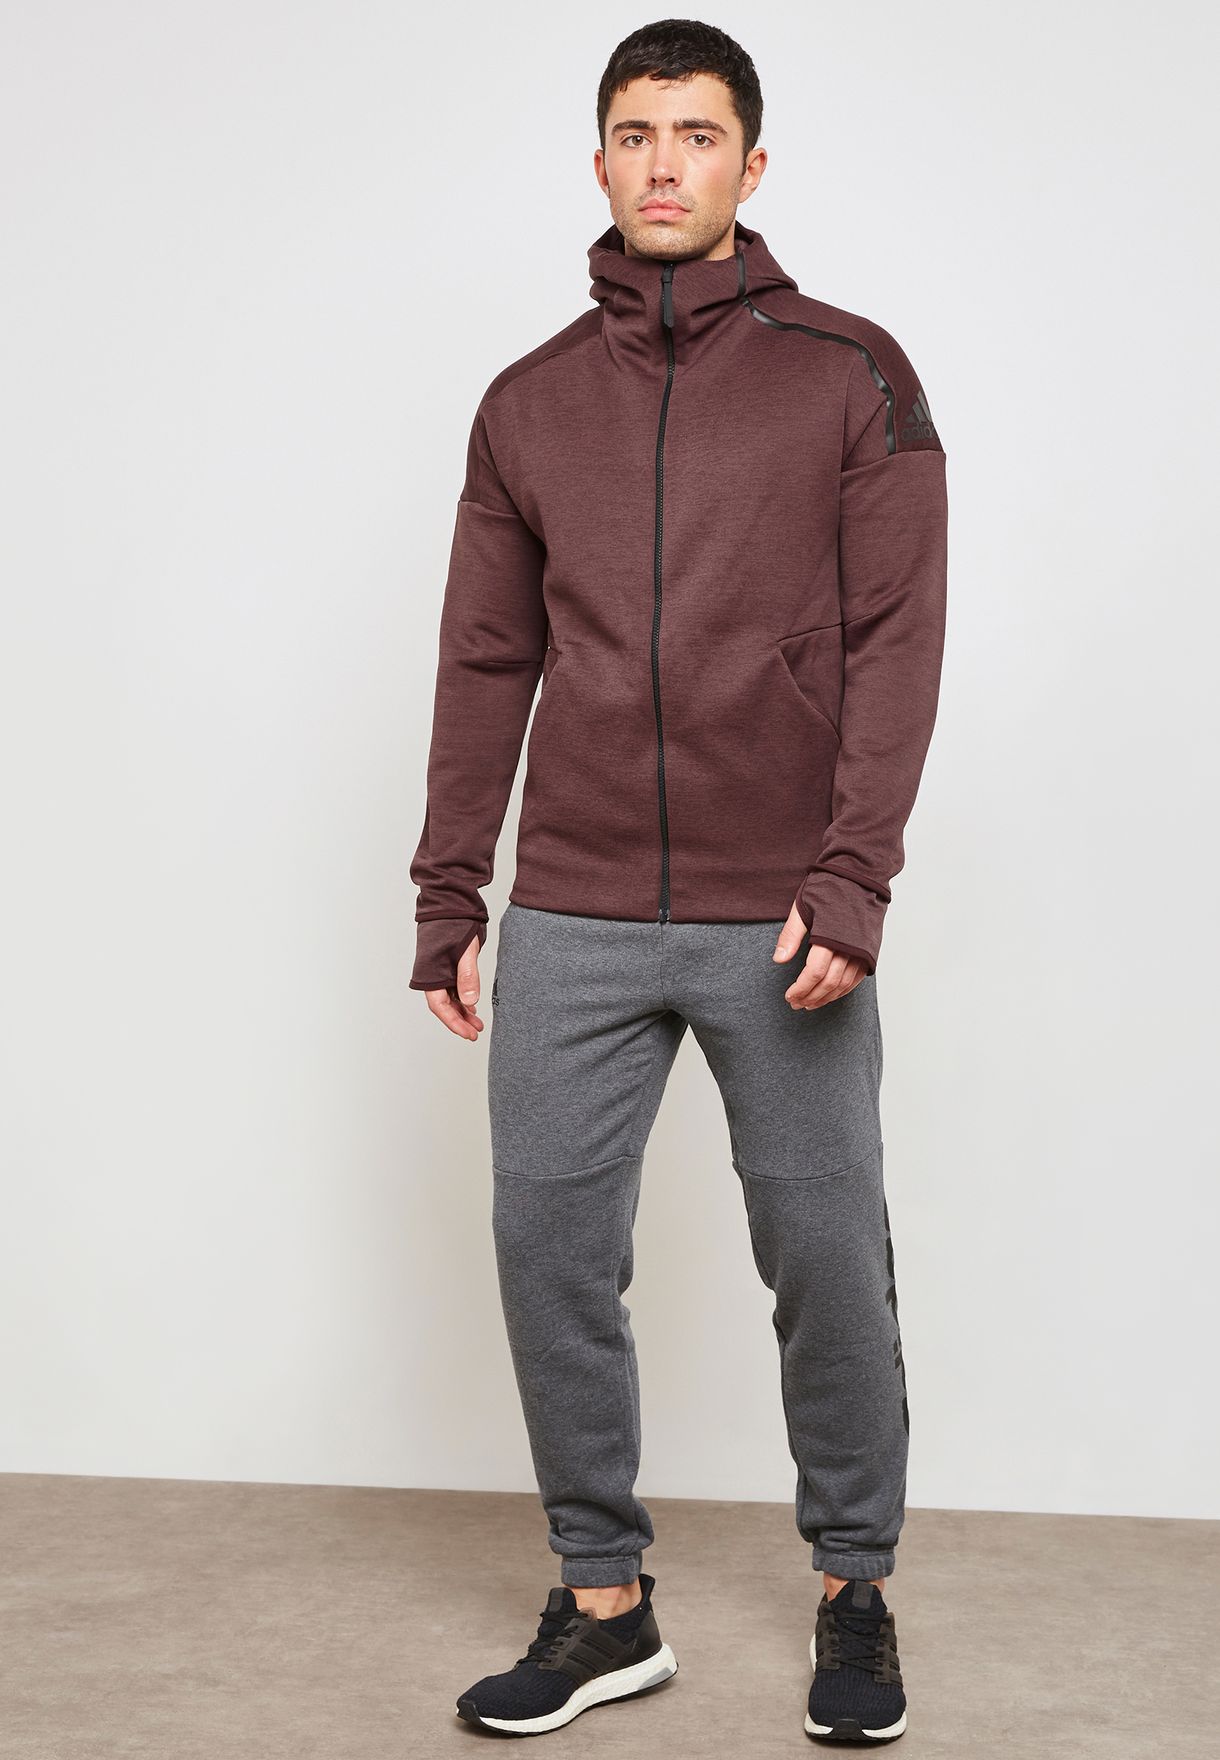 grey Essential Linear Sweatpants for Men in Worldwide